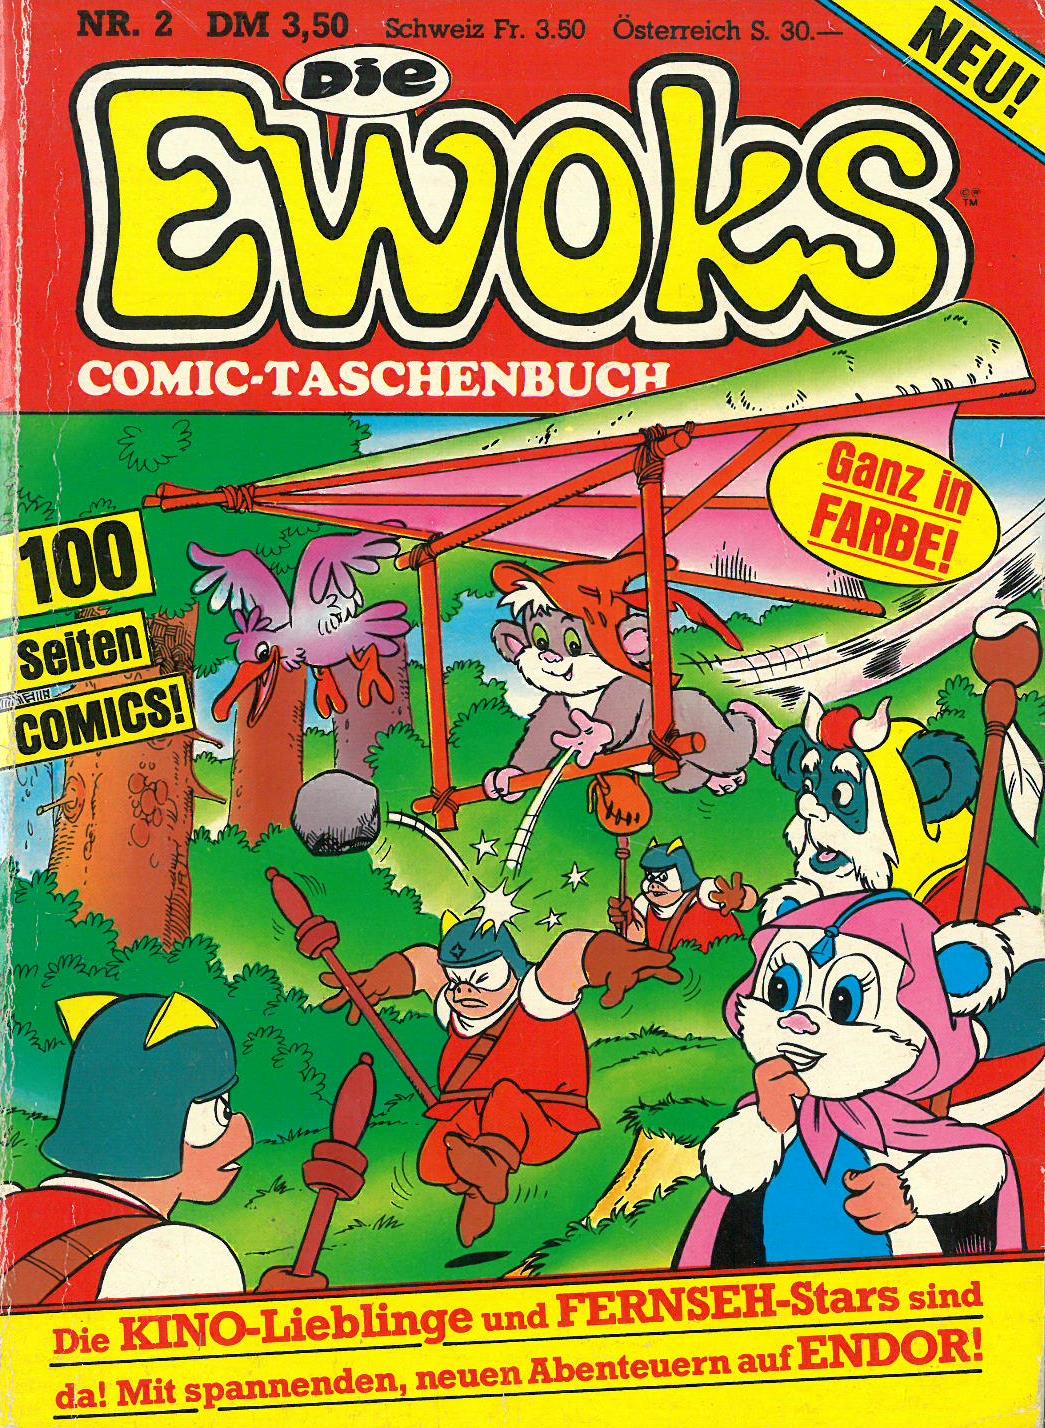 Die Ewoks ComicTaschenbuch 2 JediBibliothek